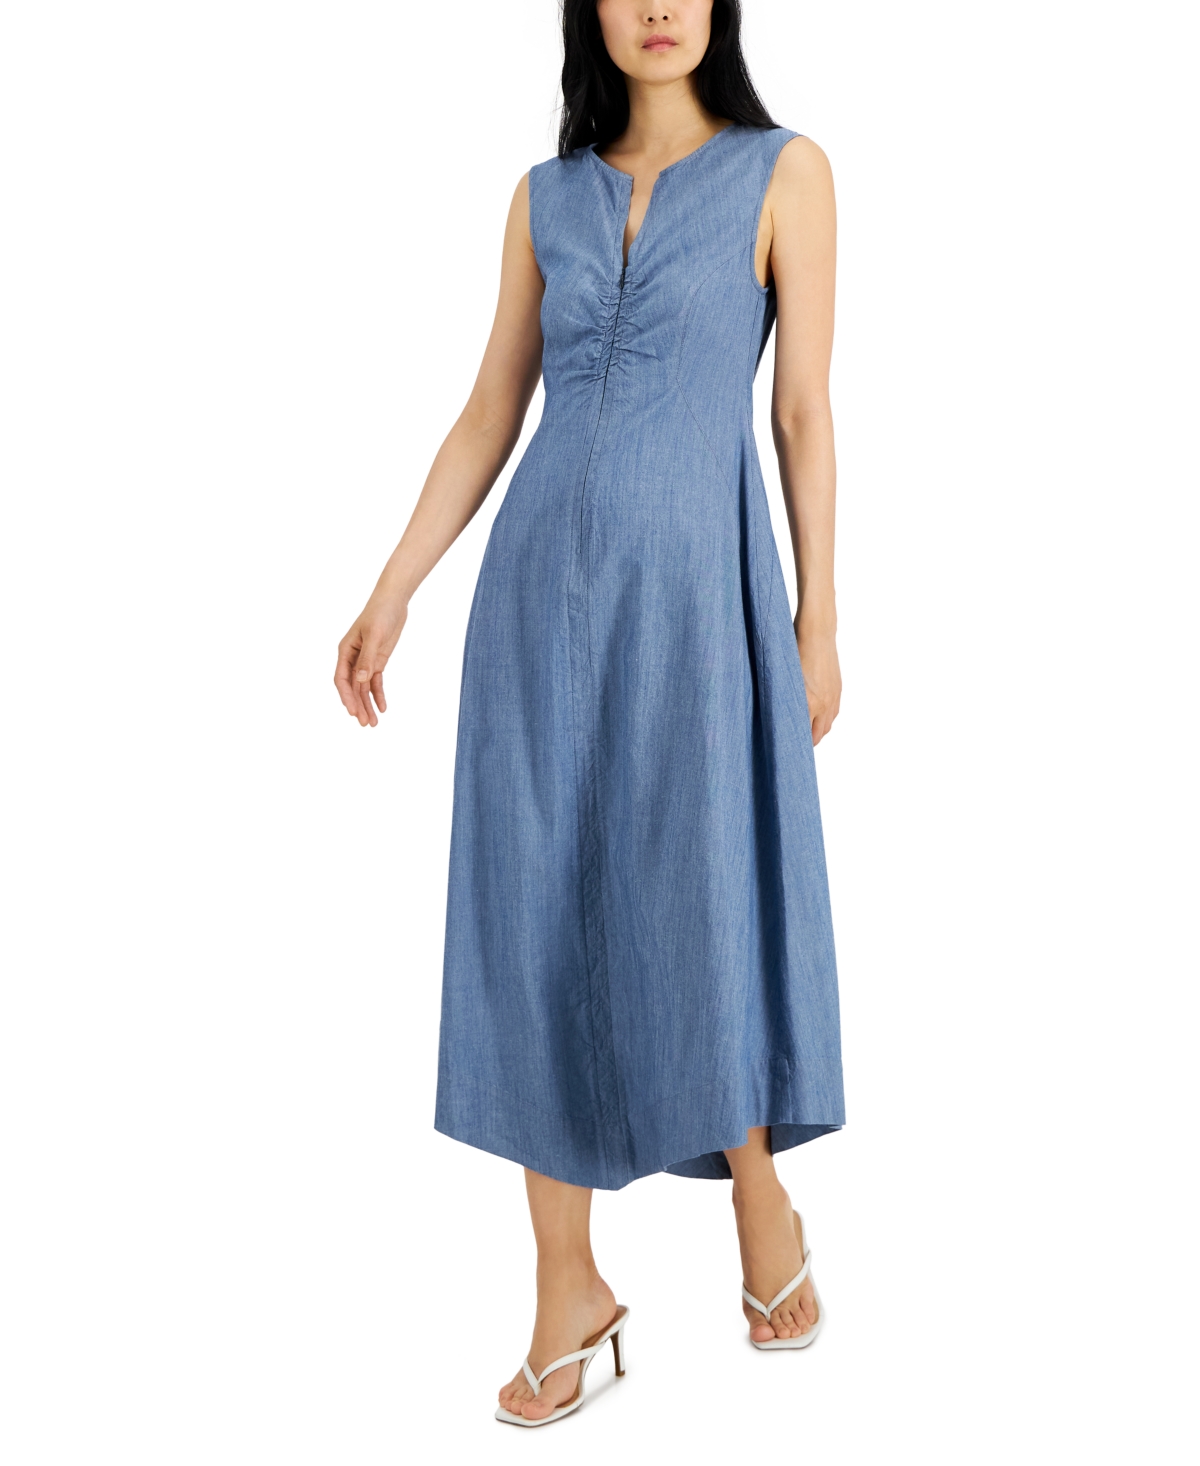 Donna Karan Zip-Front Sleeveless Dress